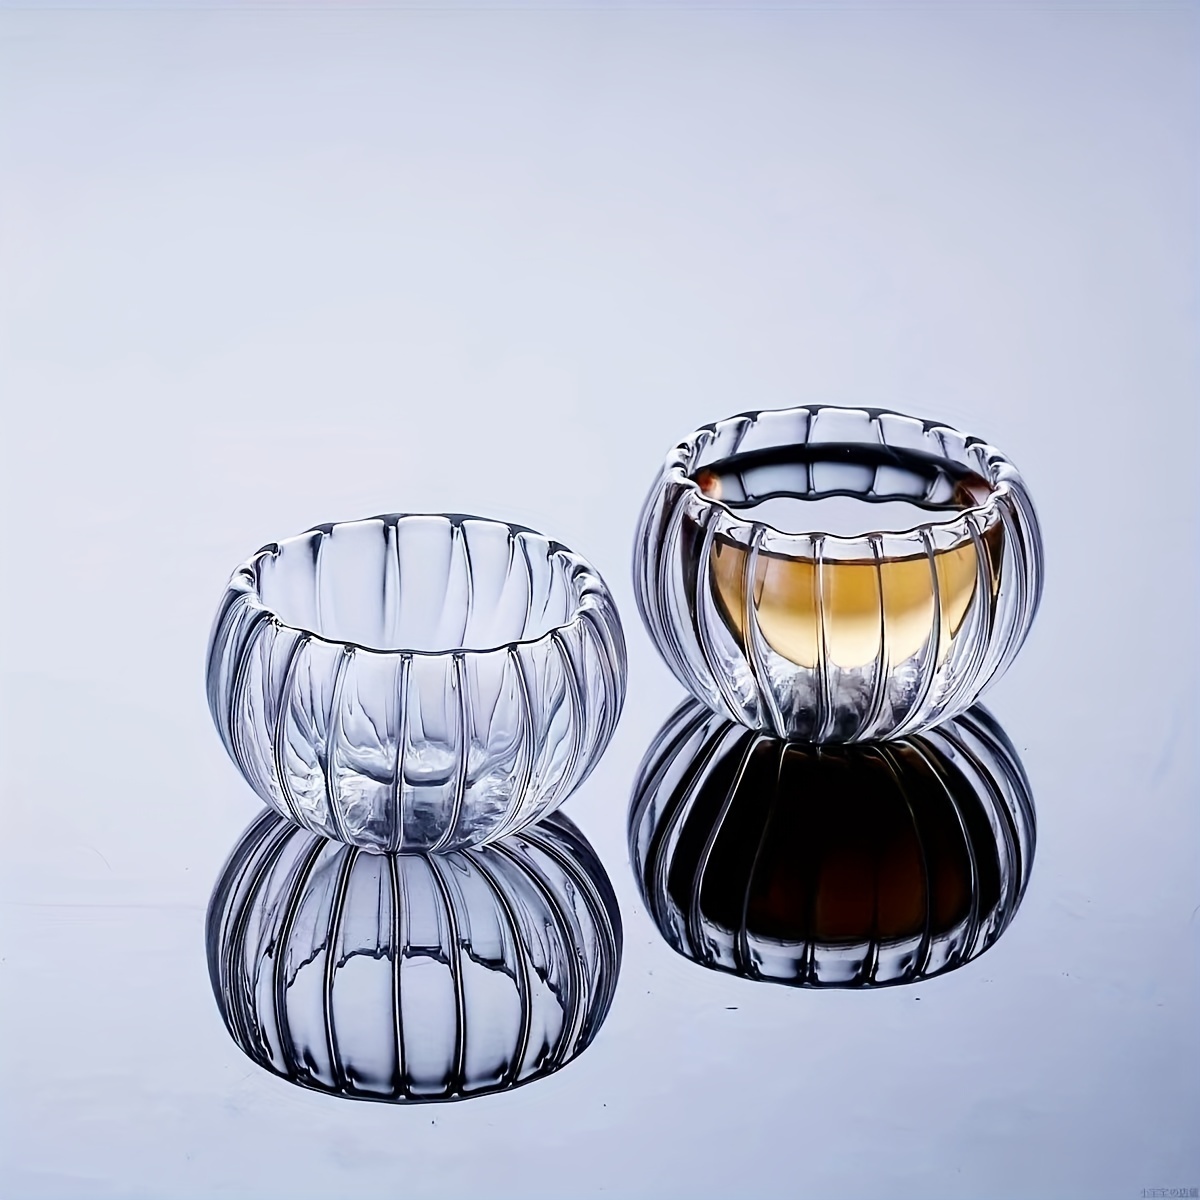 Double Walled Glass Teacups Pumpkin Shaped Tea Cups - Temu